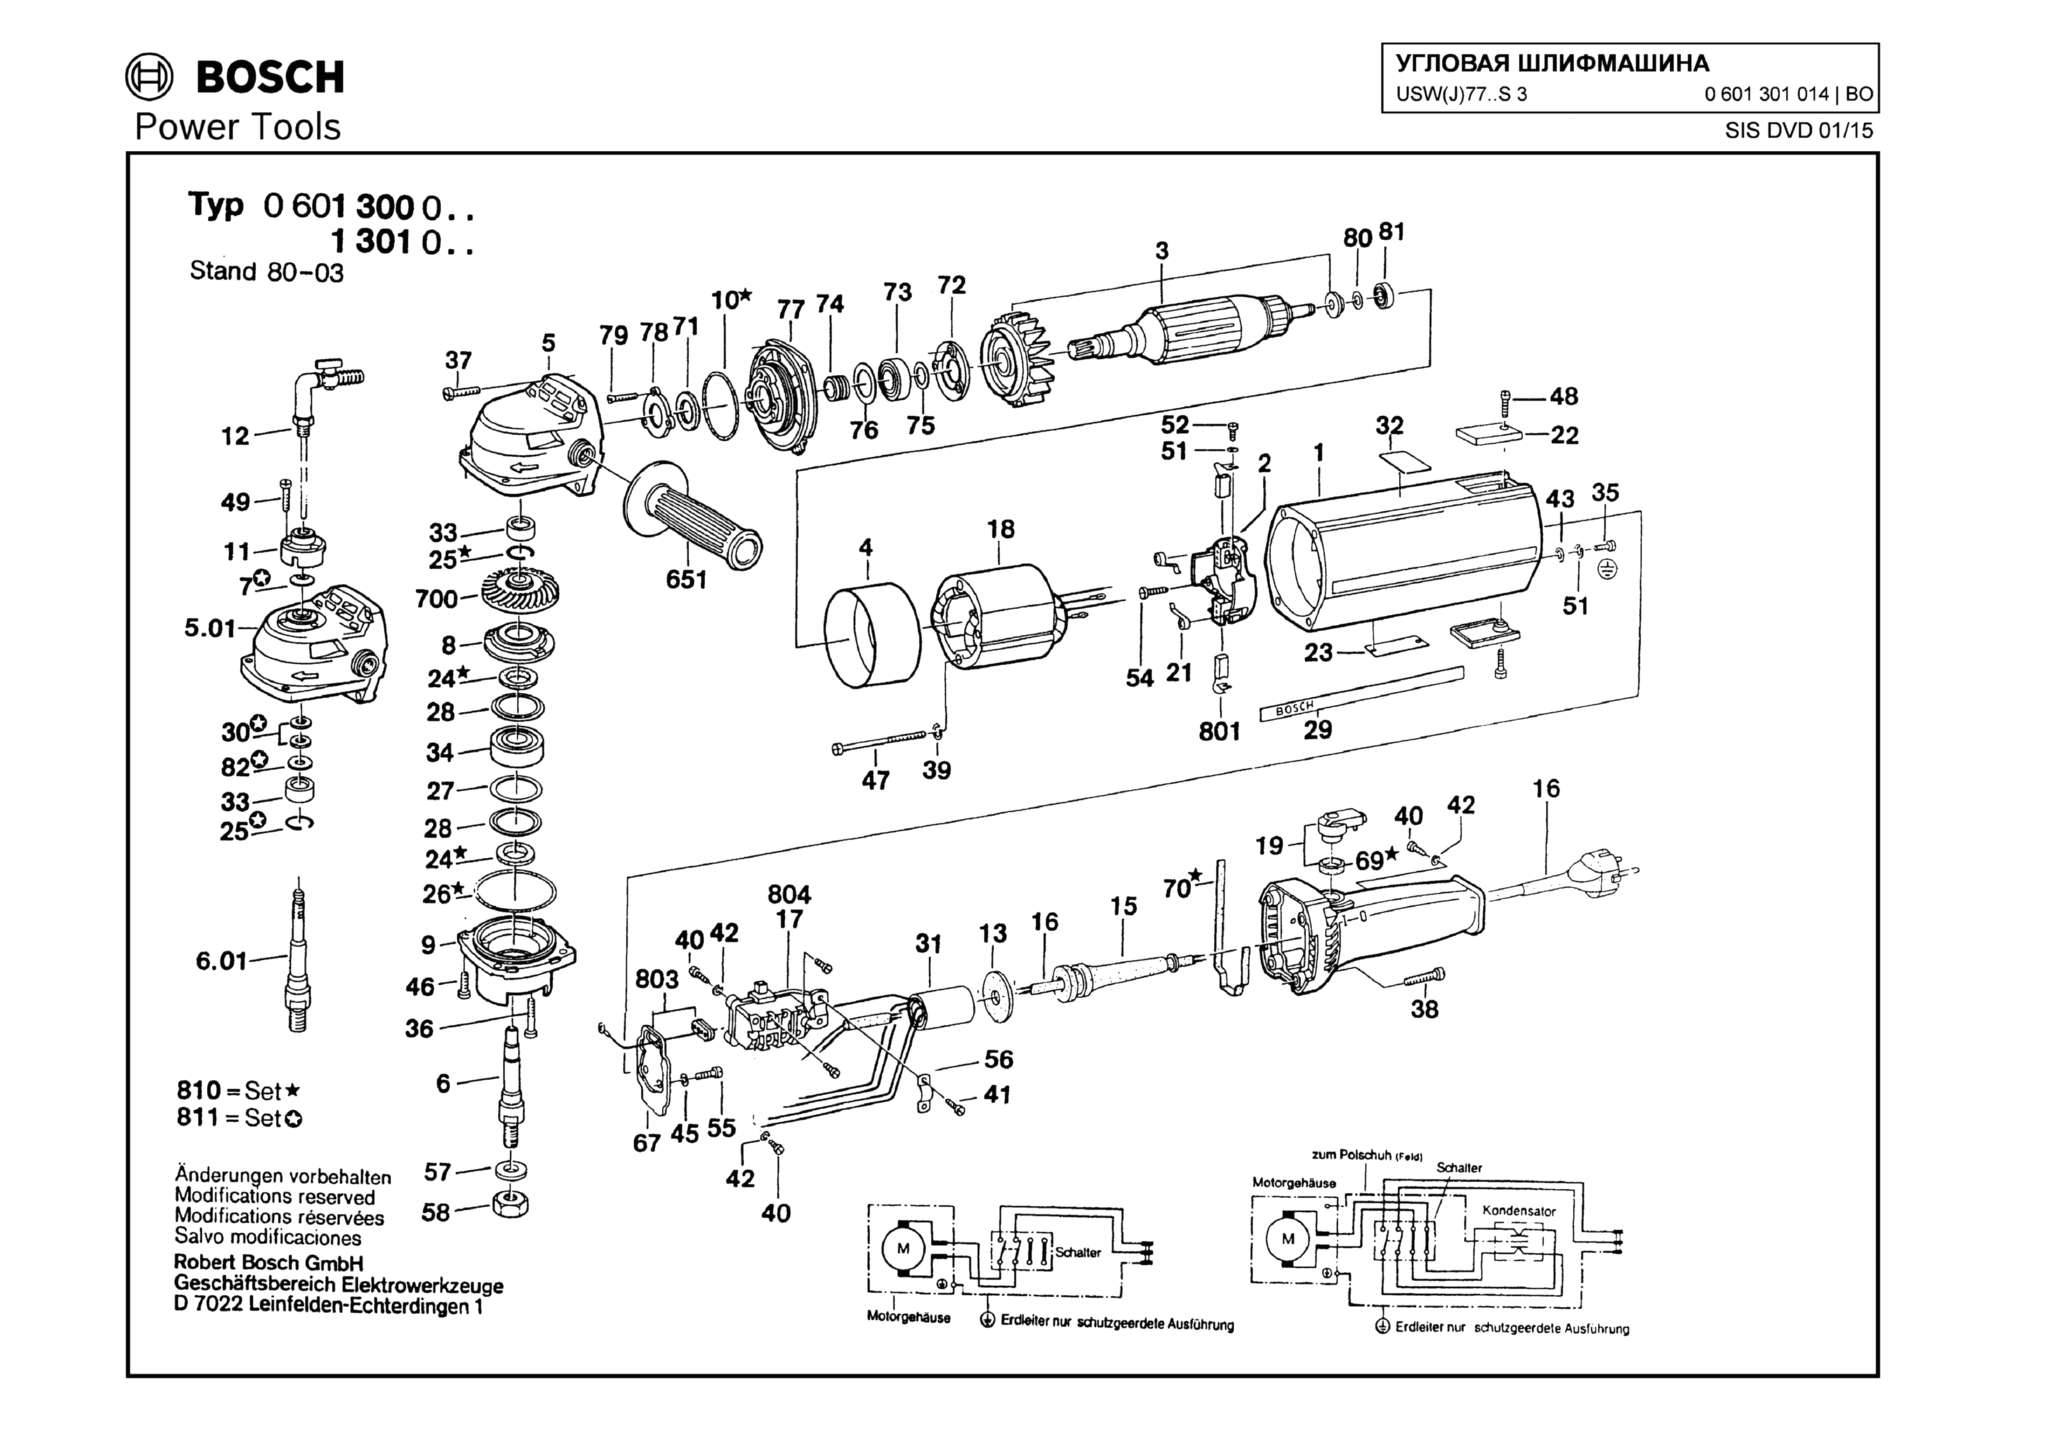 Запчасти, схема и деталировка Bosch USW(J)77..S 3 (ТИП 0601301014)